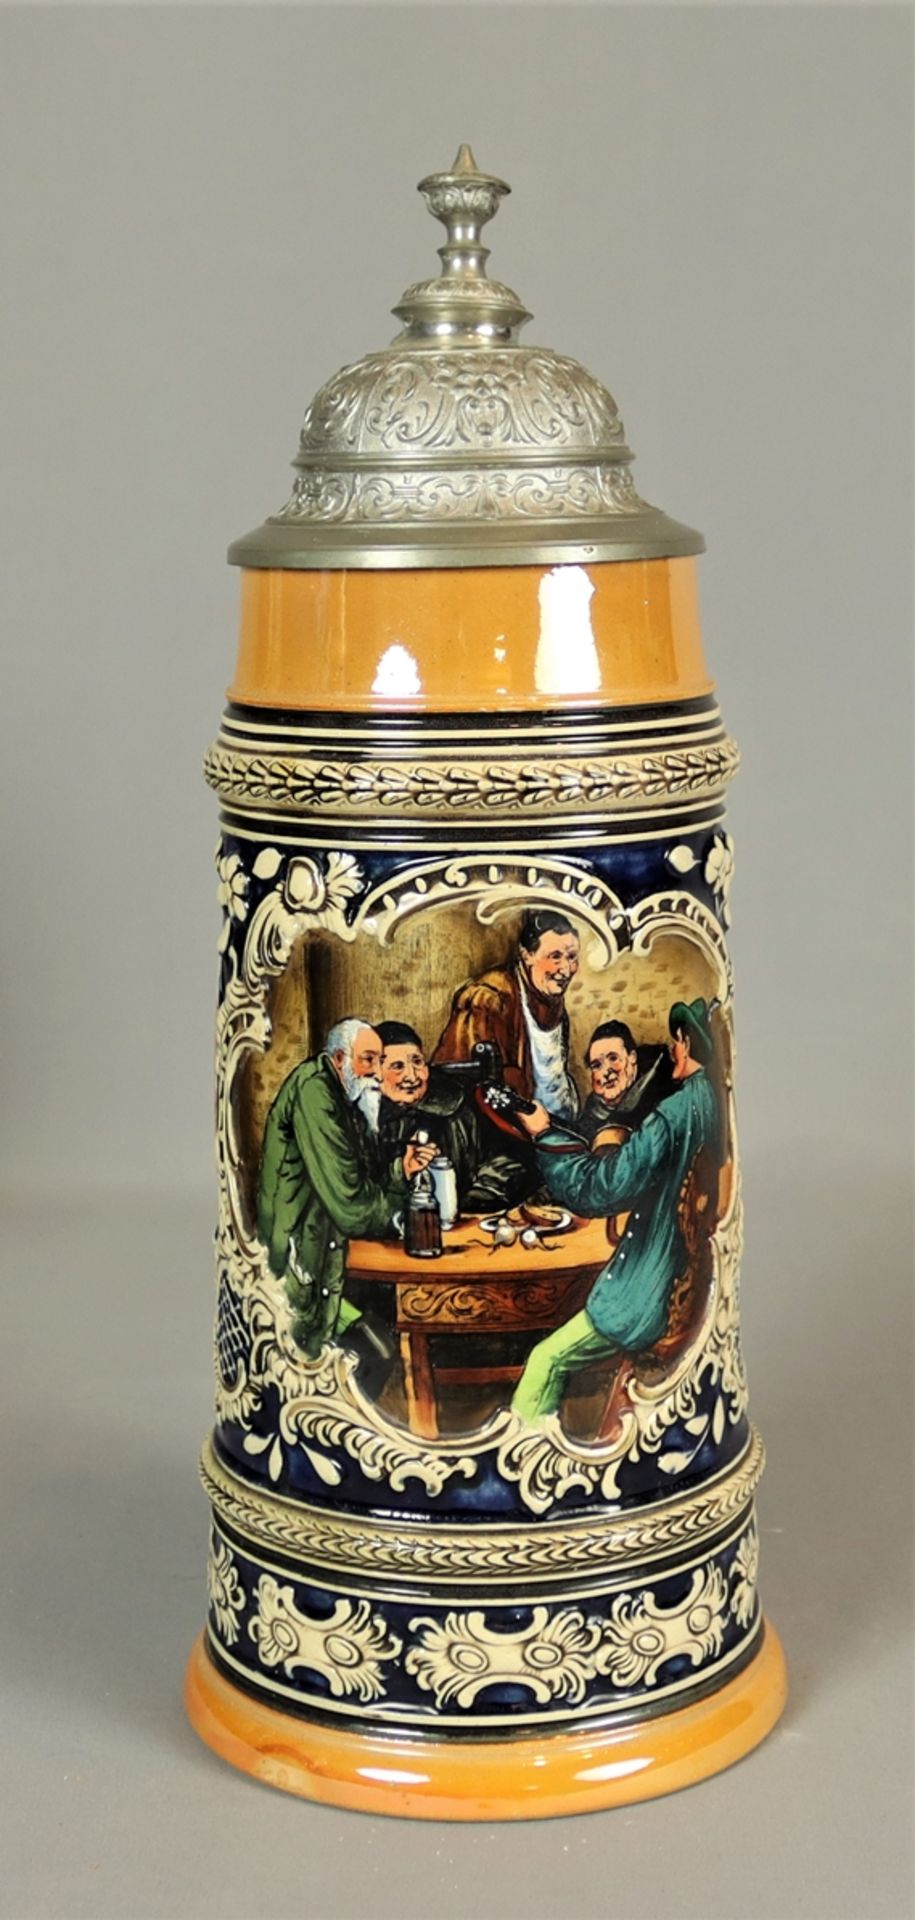 Großer Bierkrug um 1900, Majolika ohne Marke, heller Scherben, farblich gestaltet, Korpus facettier